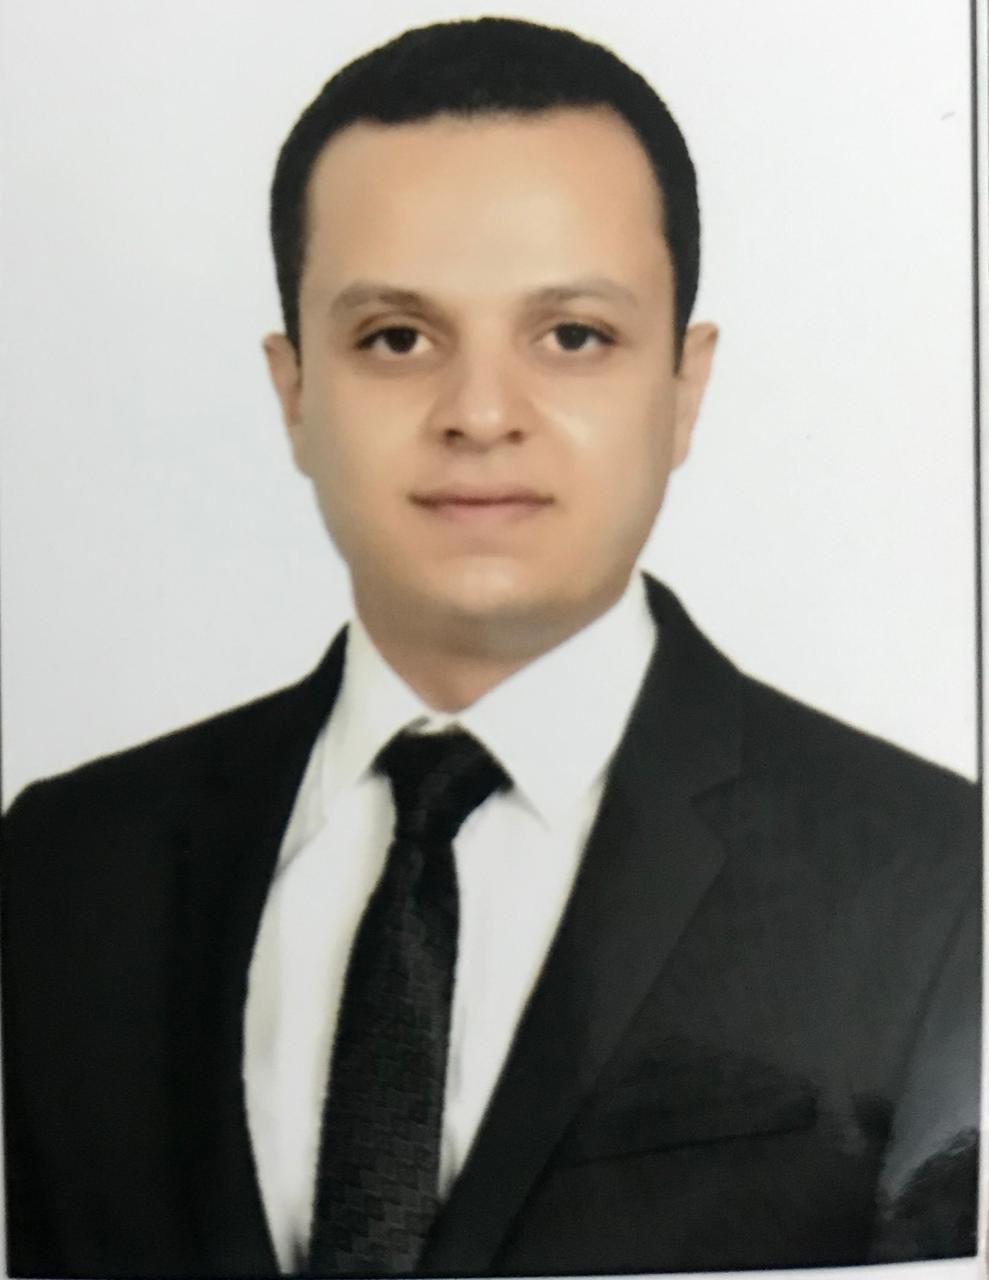 دكتور حسن ابو النجا